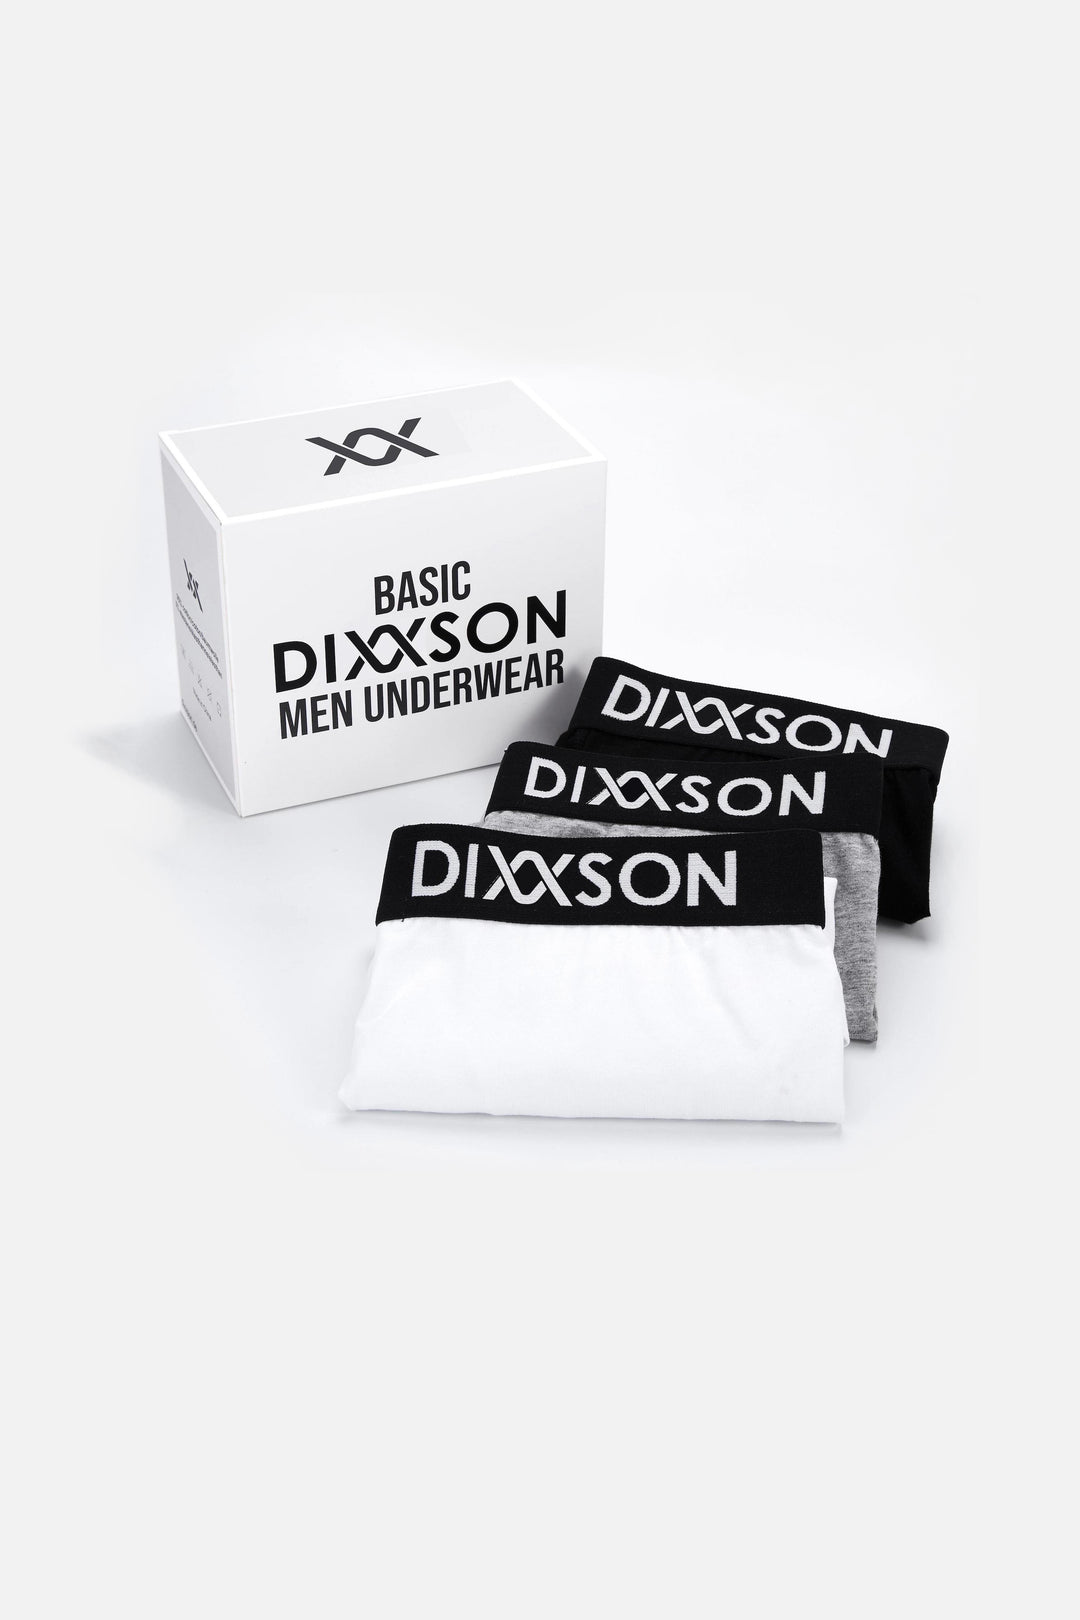 DIXXSON Basic Boxershorts Unterwäsche für Herren 6er Pack - schwarz grau weiß - Verpackung